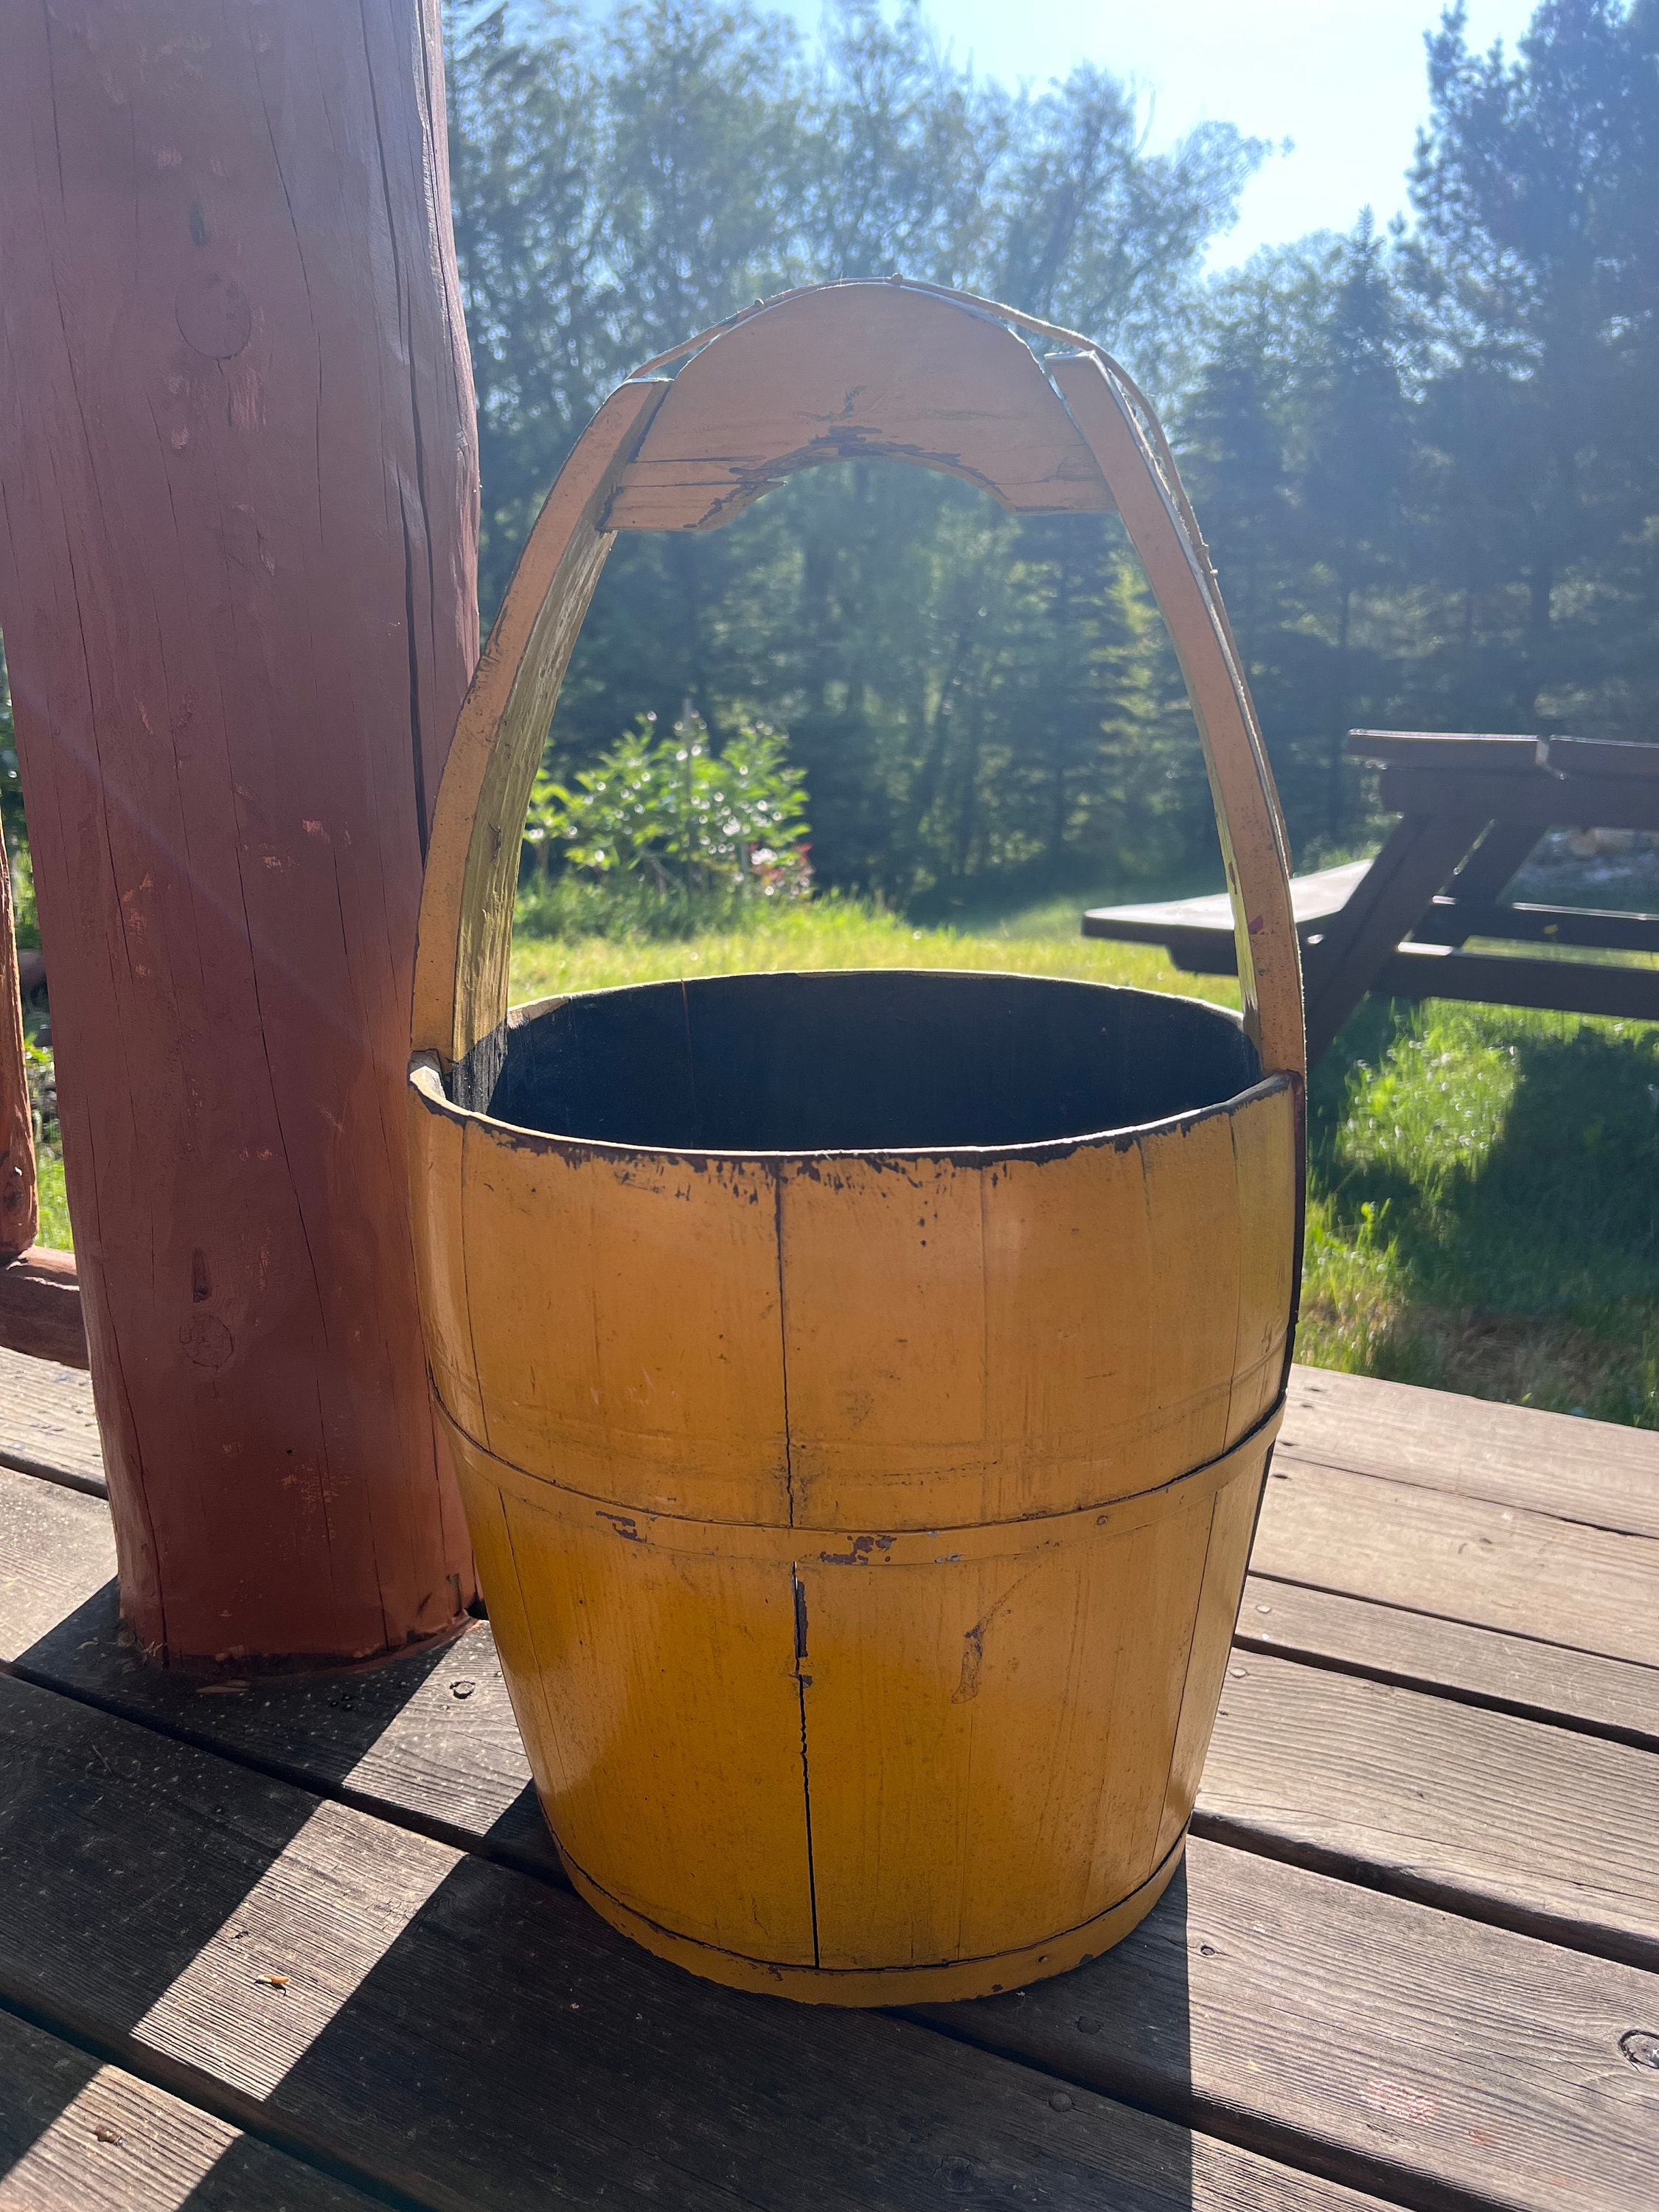 Rustic Wood Well Bucket With Handle Large Bucket Rustic Decor